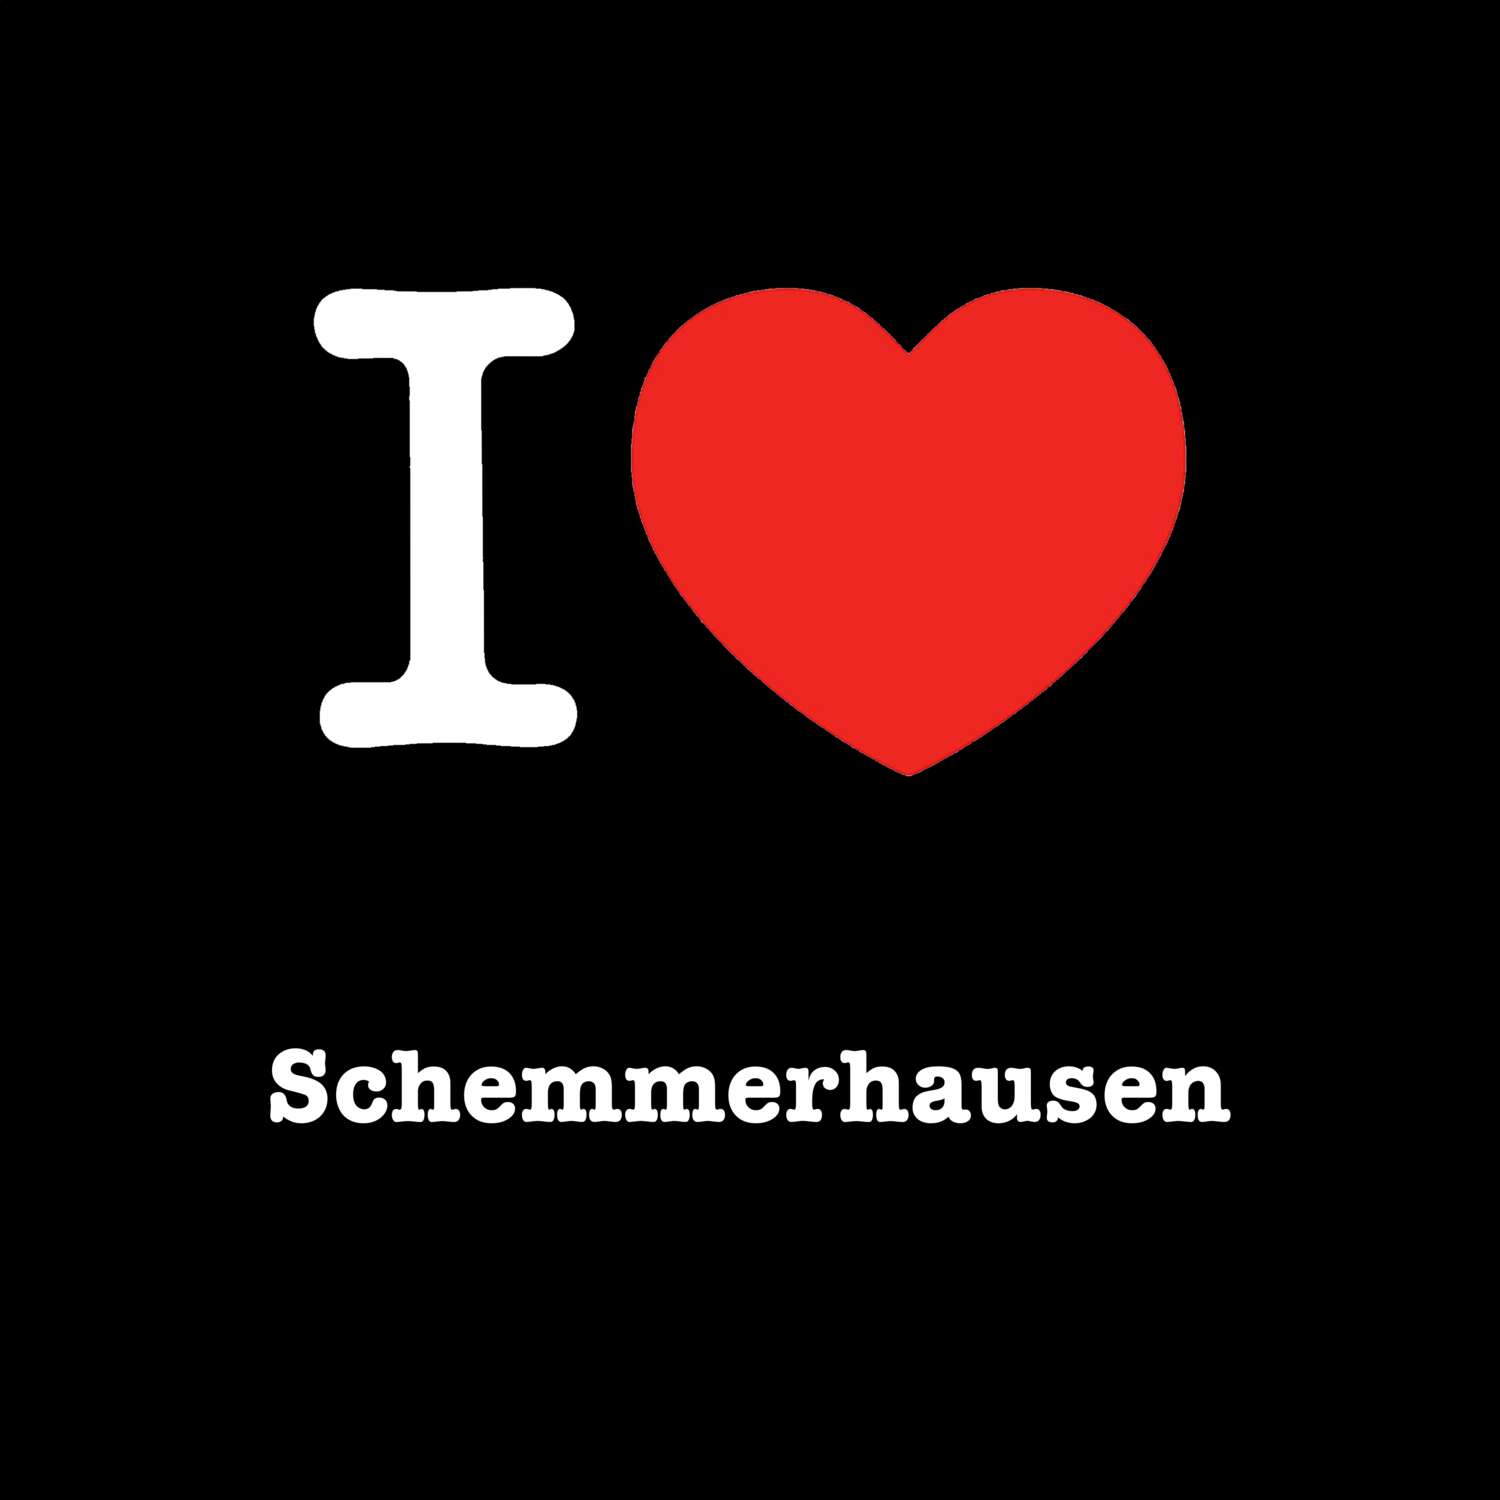 Schemmerhausen T-Shirt »I love«